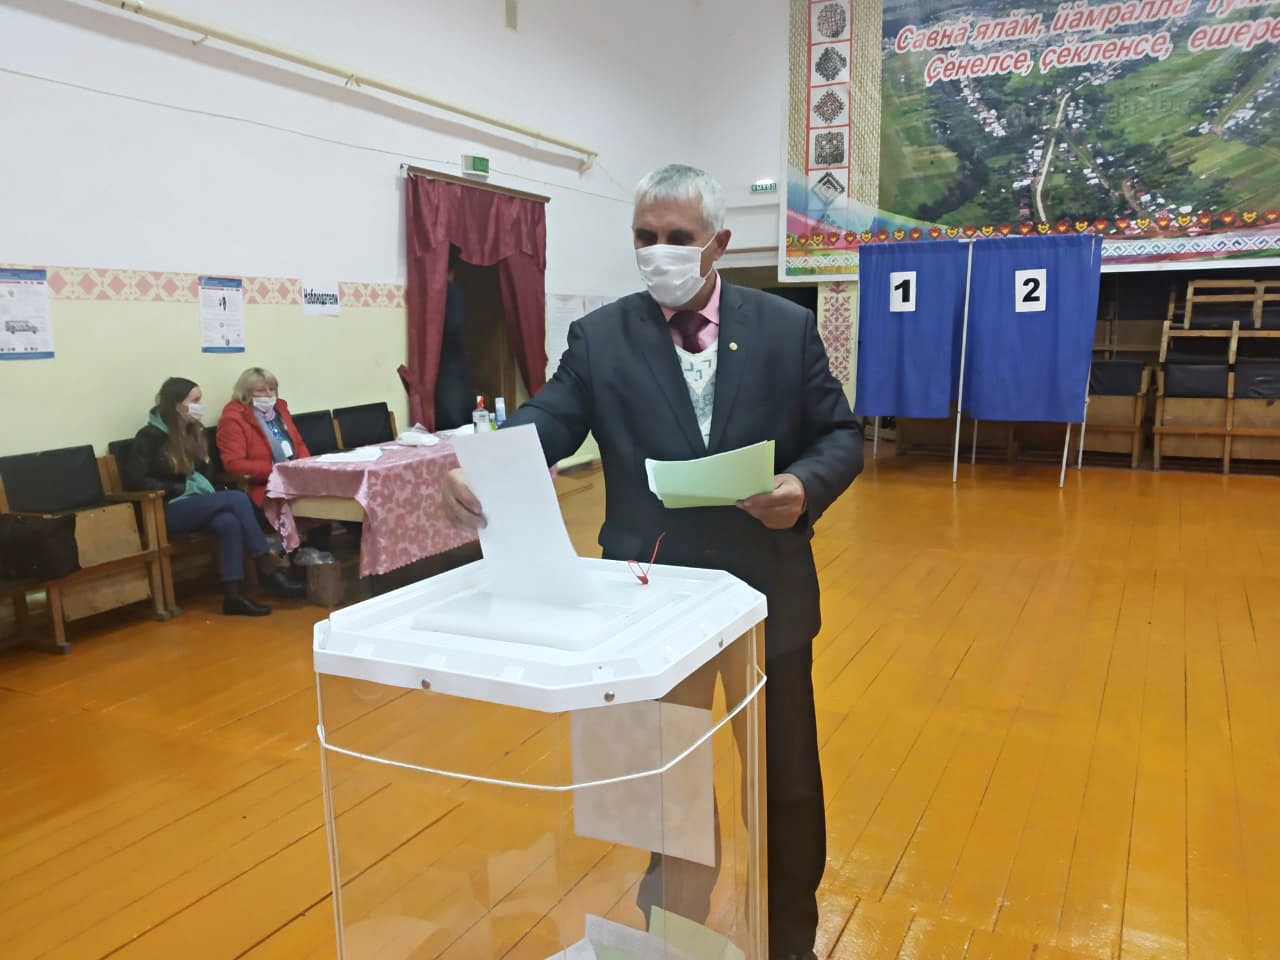 Алексей Никитин: «Участие в выборах — это гражданский долг каждого»